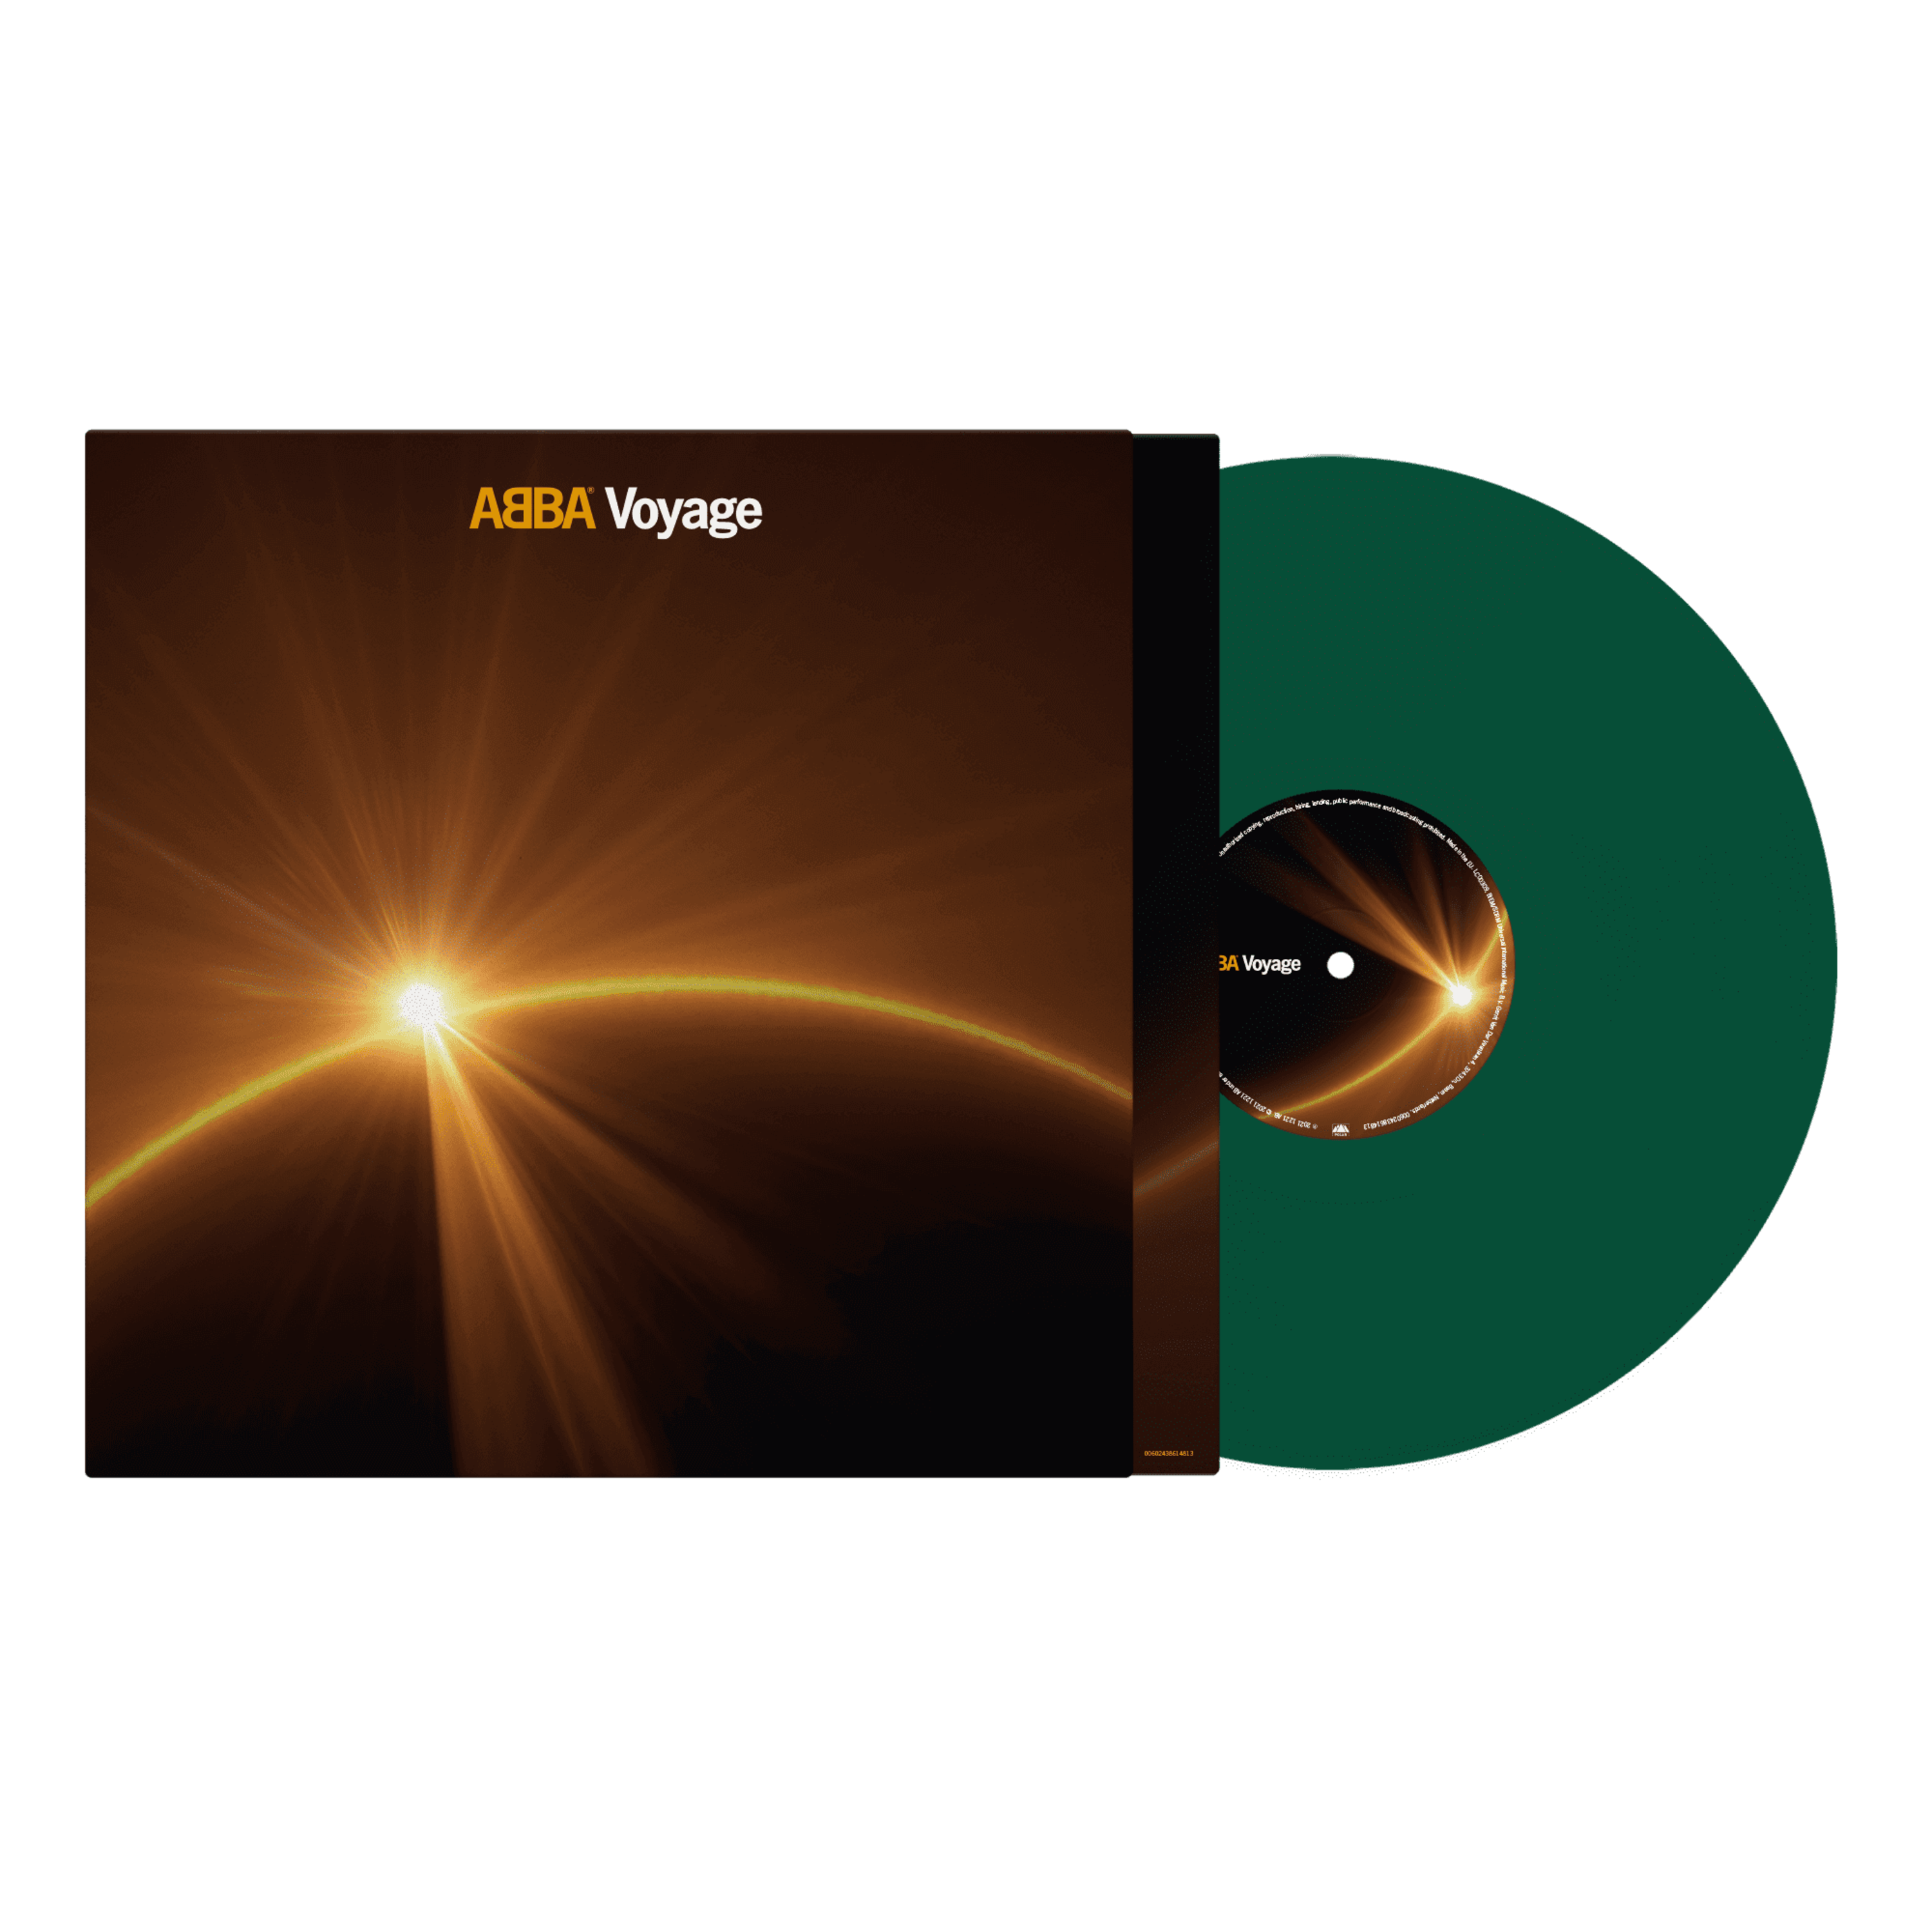 https://images.bravado.de/prod/product-assets/product-asset-data/abba/abba/products/138730/web/303320/image-thumb__303320__3000x3000_original/ABBA-Voyage-Store-Exclusive-Green-Vinyl-Vinyl-138730-303320.png